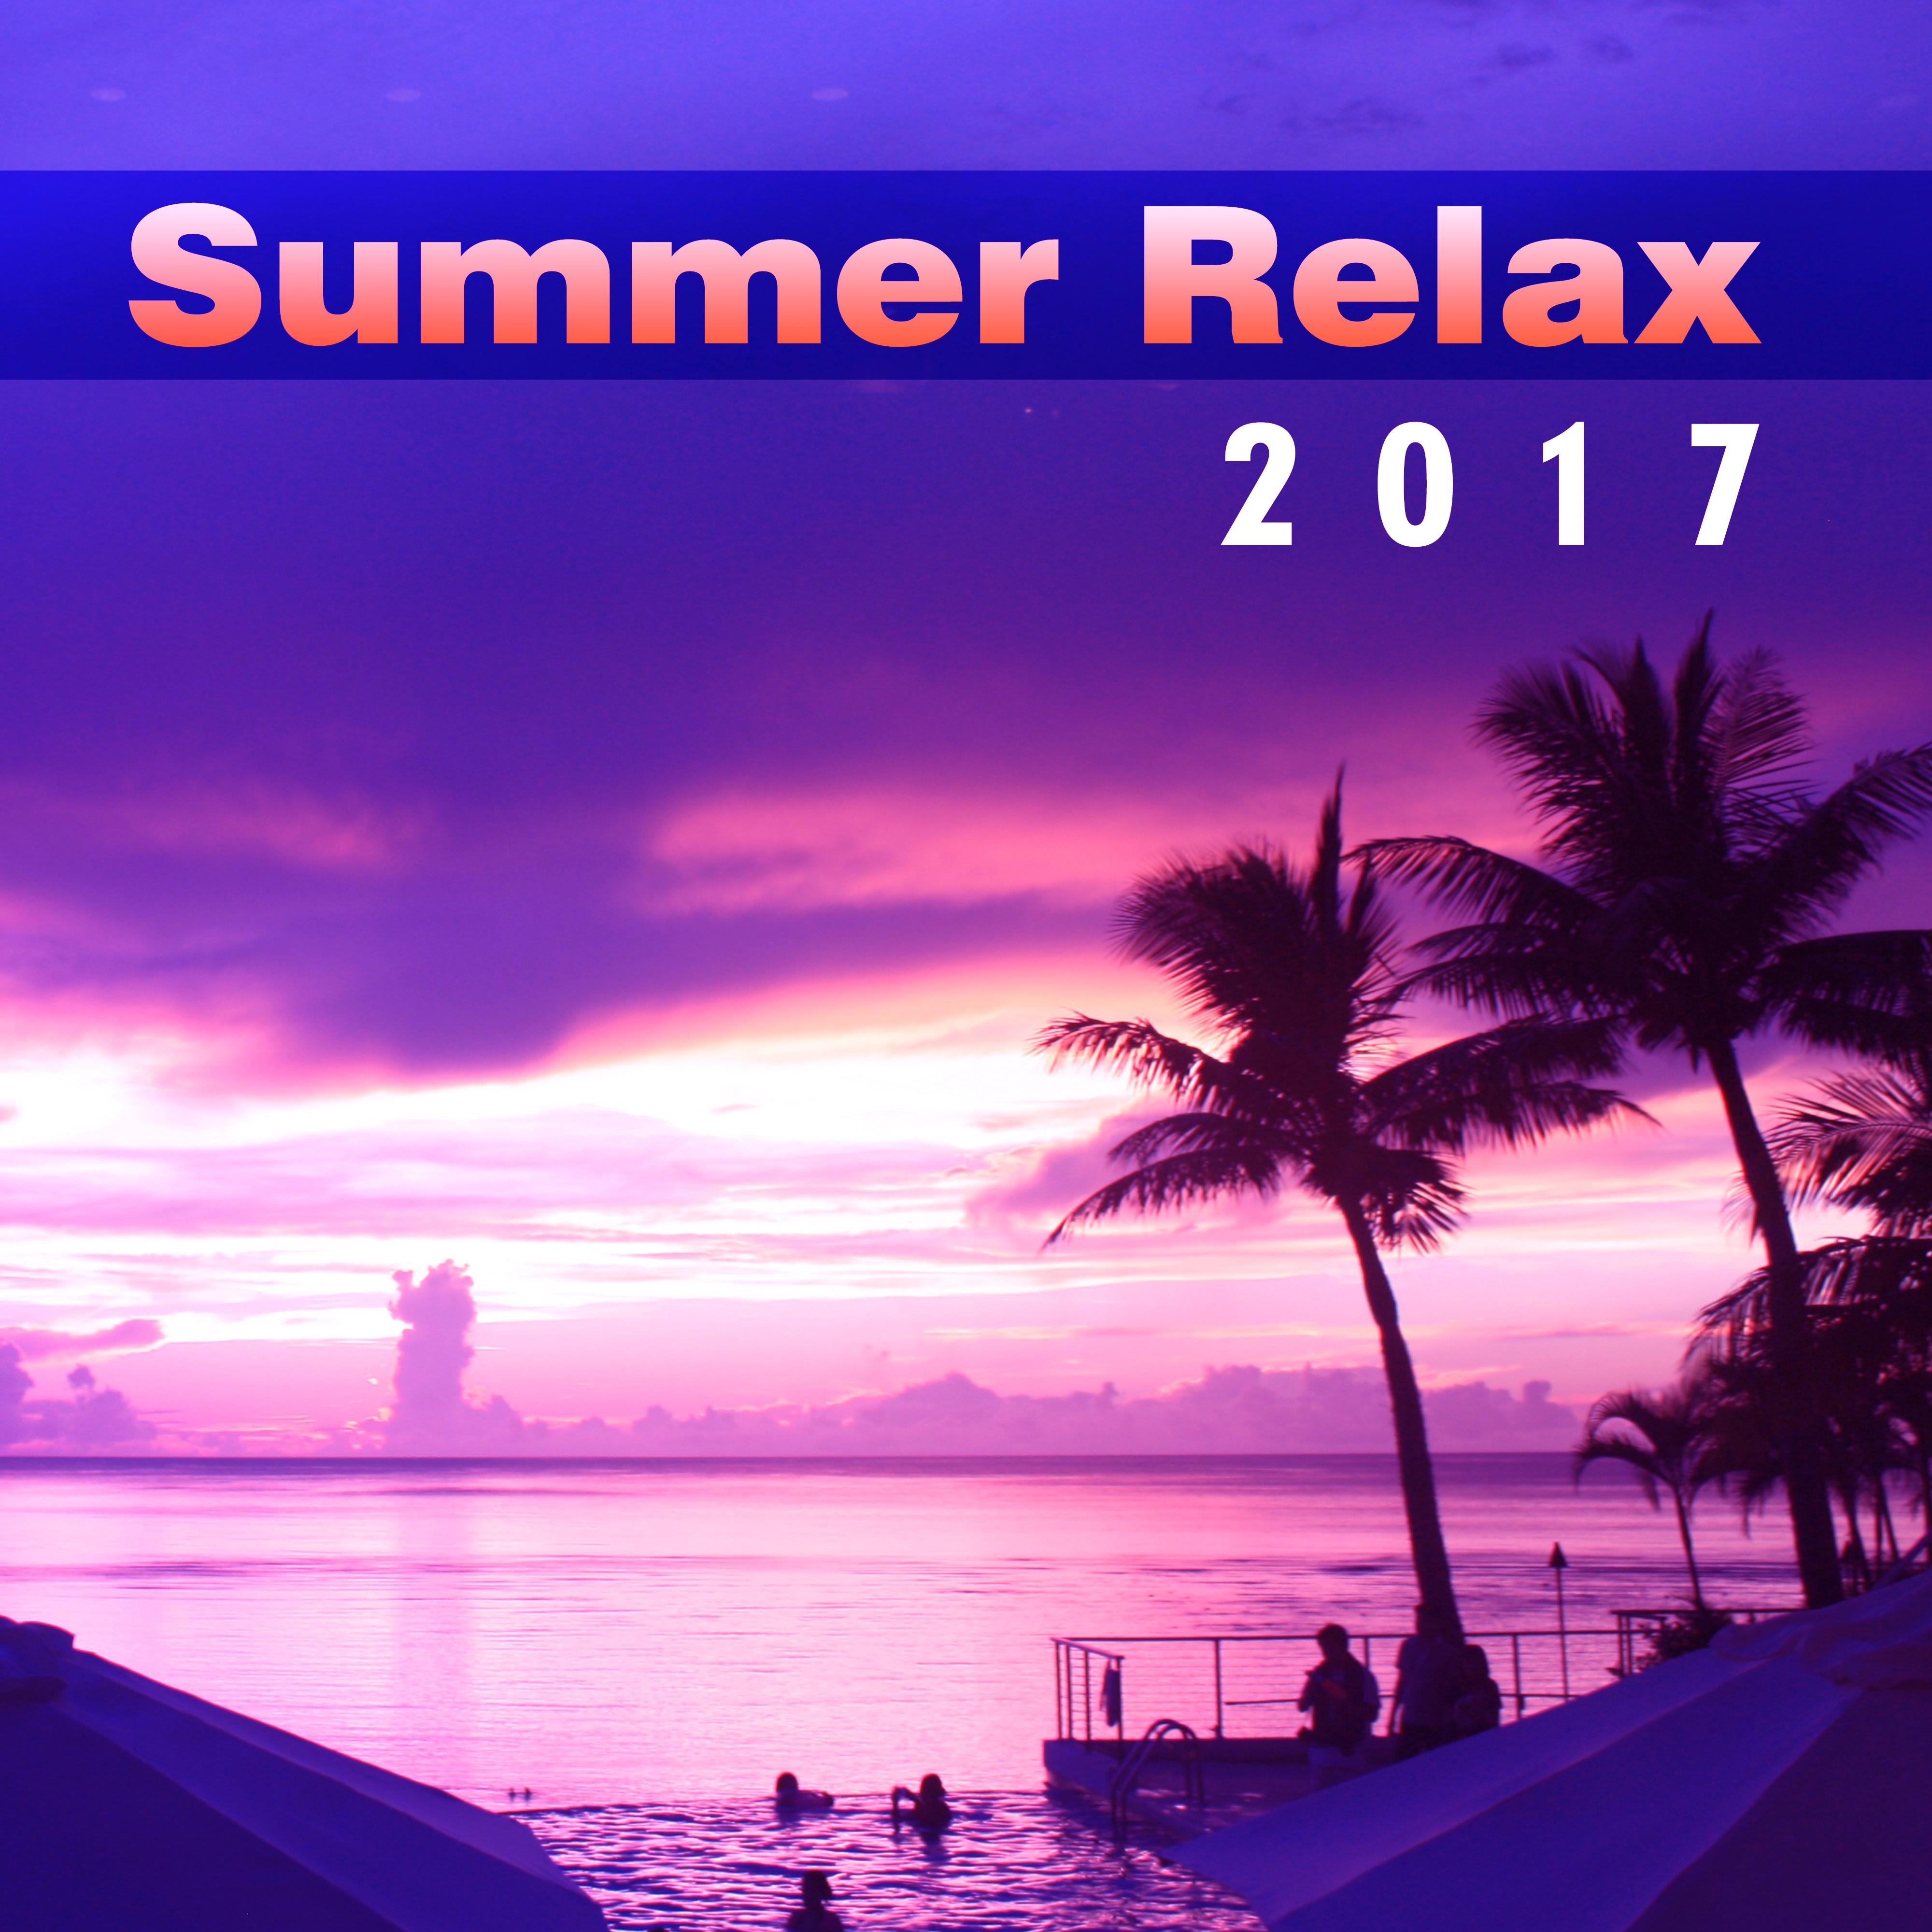 Summer Relax 2017 – New Chill Out Music, Summer Lounge, Deep Relaxation, Zen